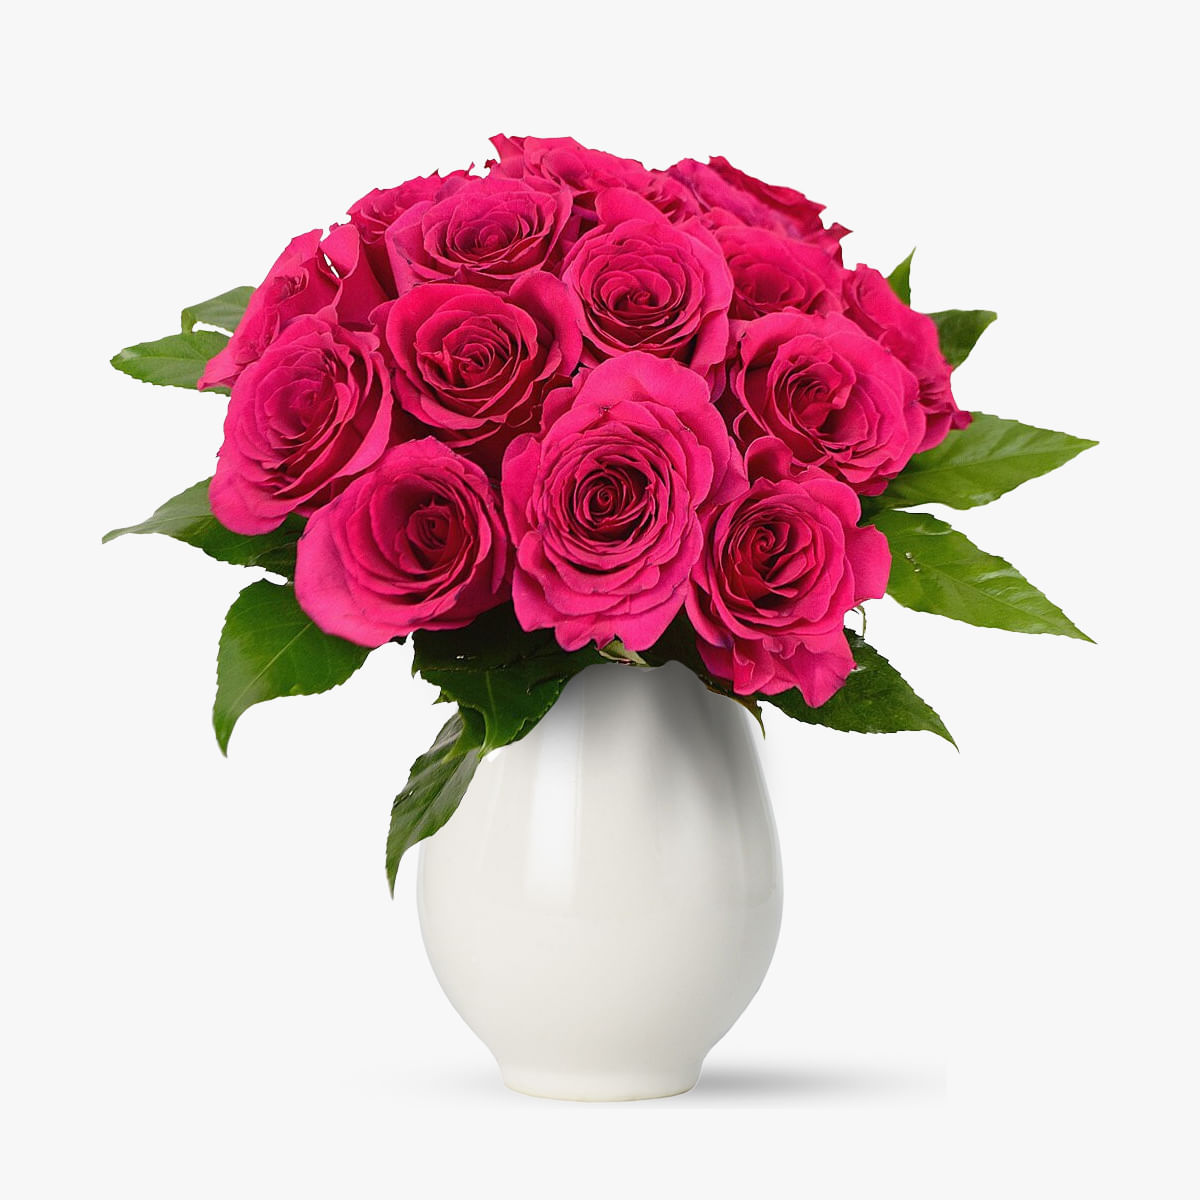 Buchet de 15 trandafiri roz – Standard